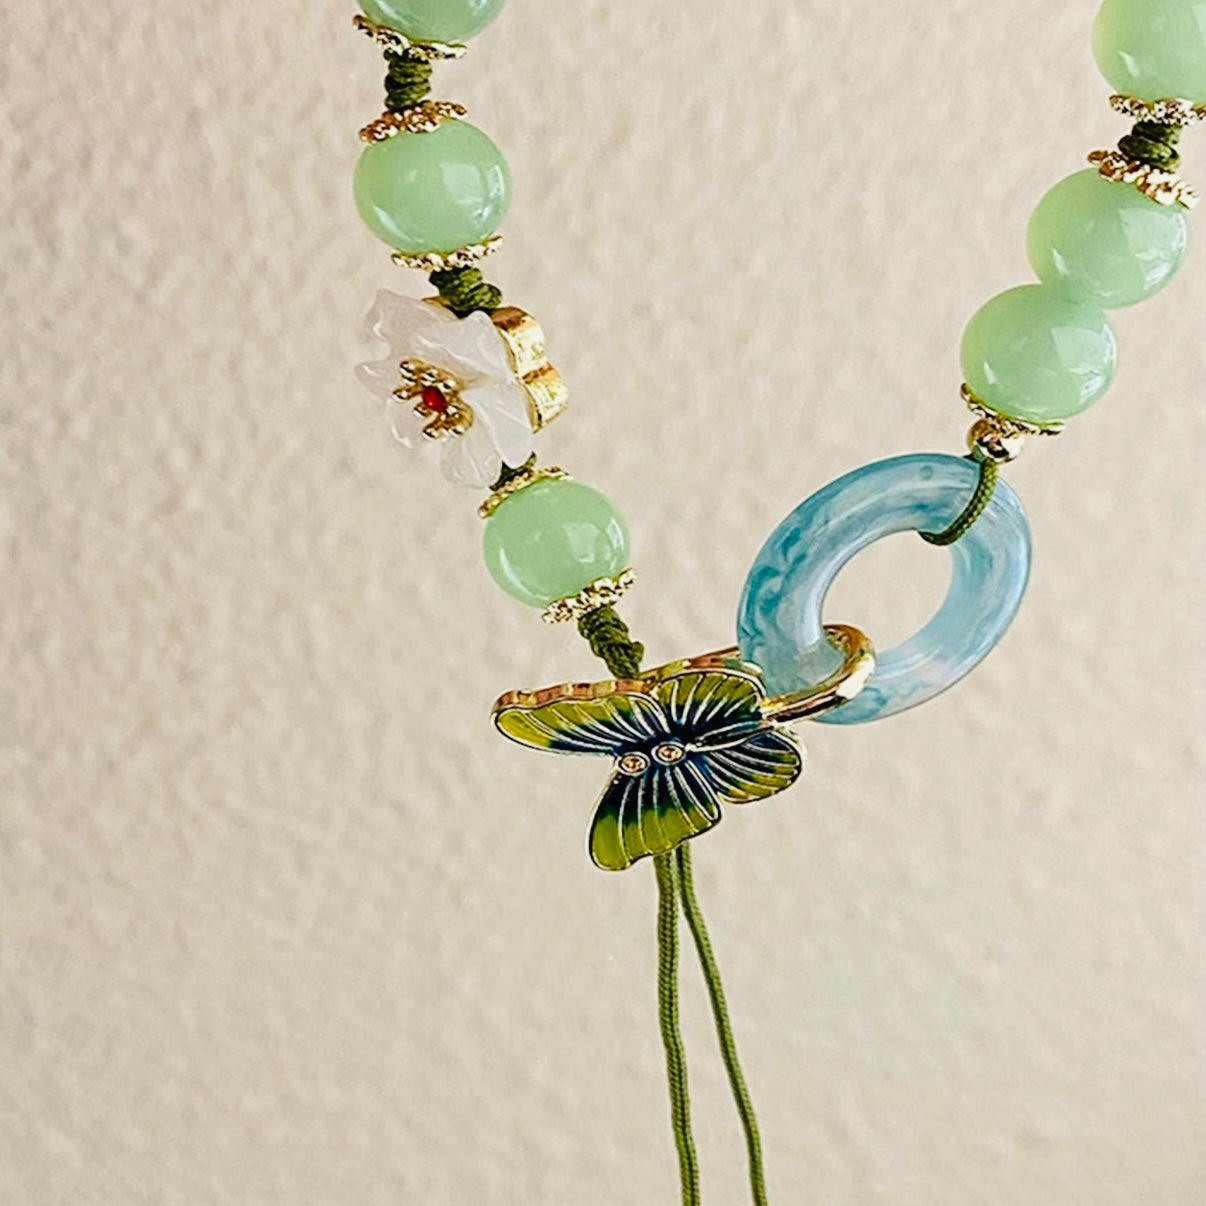 Pulsera con cuentas de piedra de jade con detalles de flor y mariposa en jade para prosperidad y suerte